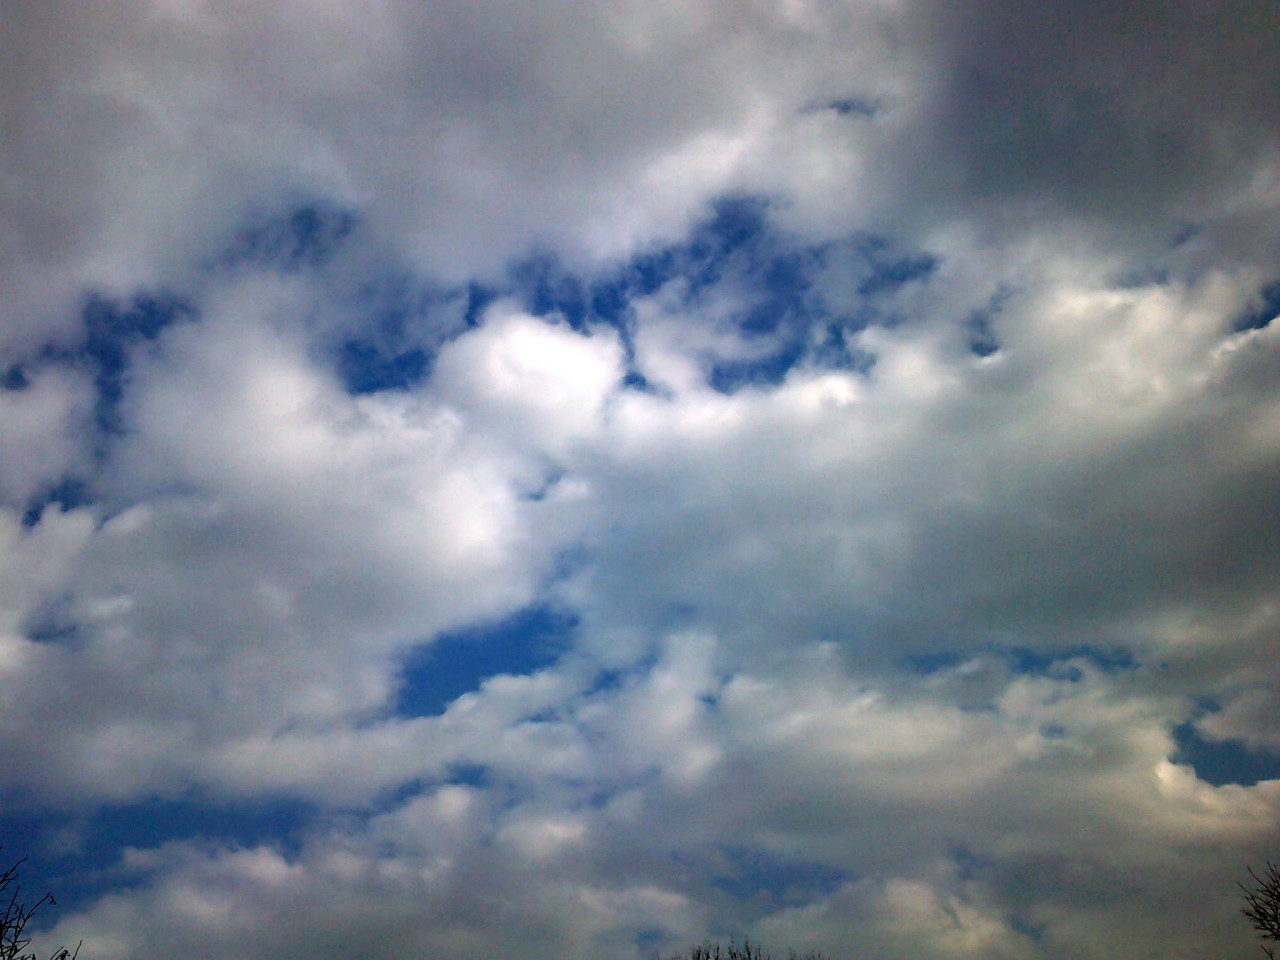 Meteo Trapani: oggi martedì 20 Febbraio prevalentemente nuvoloso per velature. Allerta gialla della Protezione Civile.